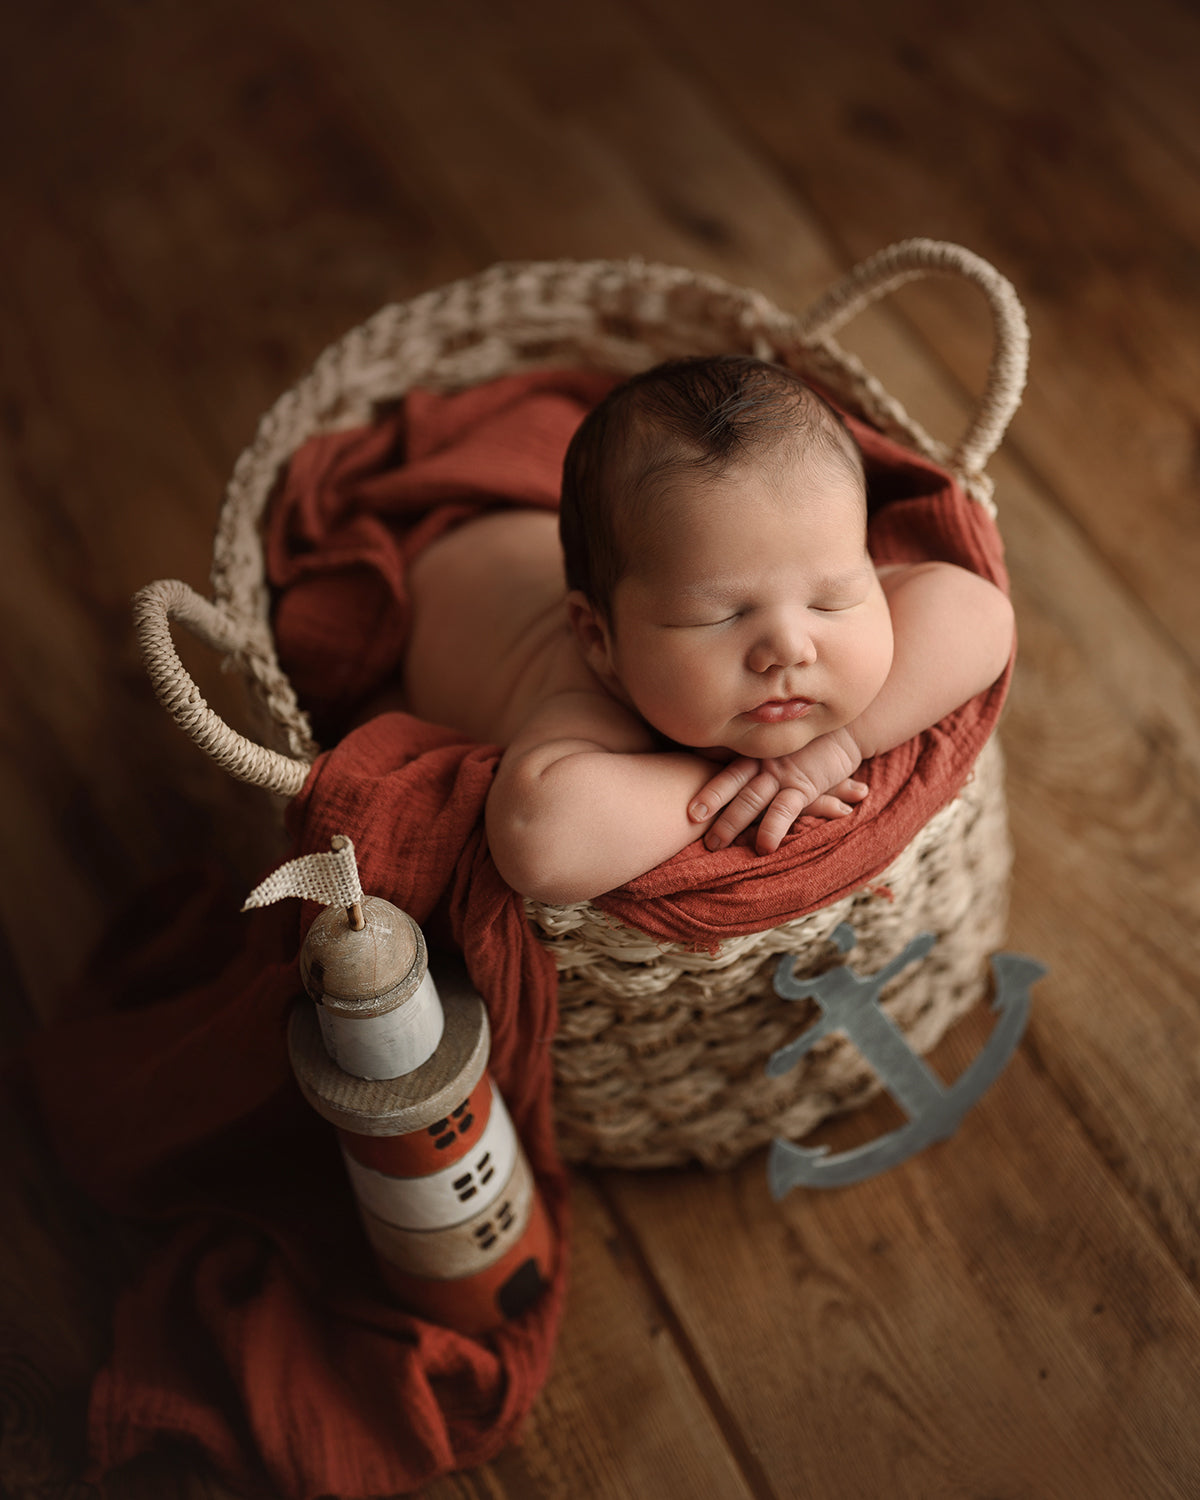 https://lemongraph.es/cdn/shop/products/set-de-fotografia-newborn_1200x.jpg?v=1680162907